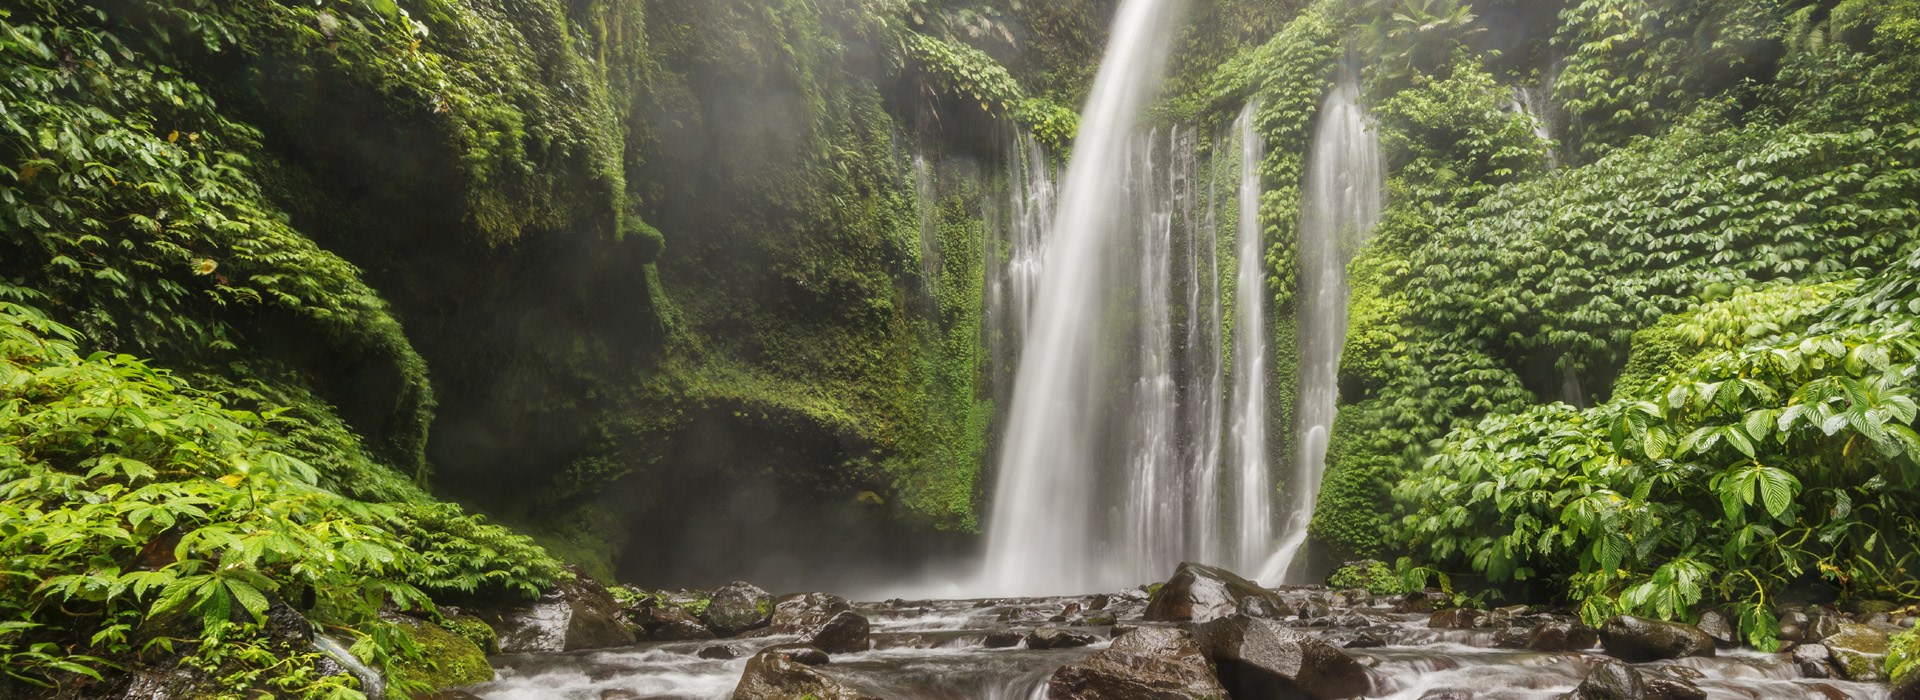 Visiter La cascade de Sendang Gile - Indonesie